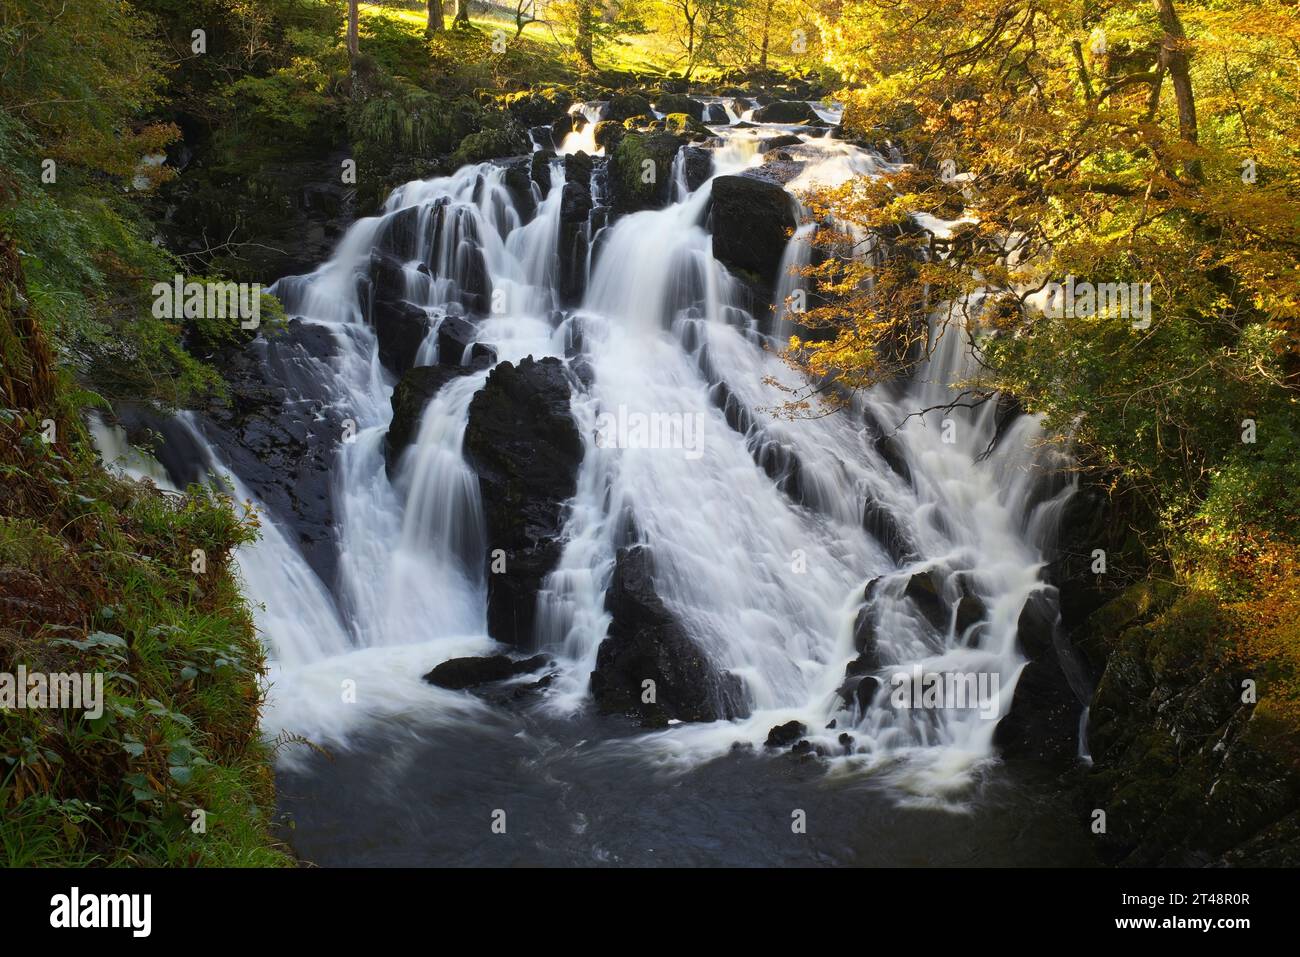 Swallow Falls, Betws y Coed, Gwynedd, North Wales. Stock Photo